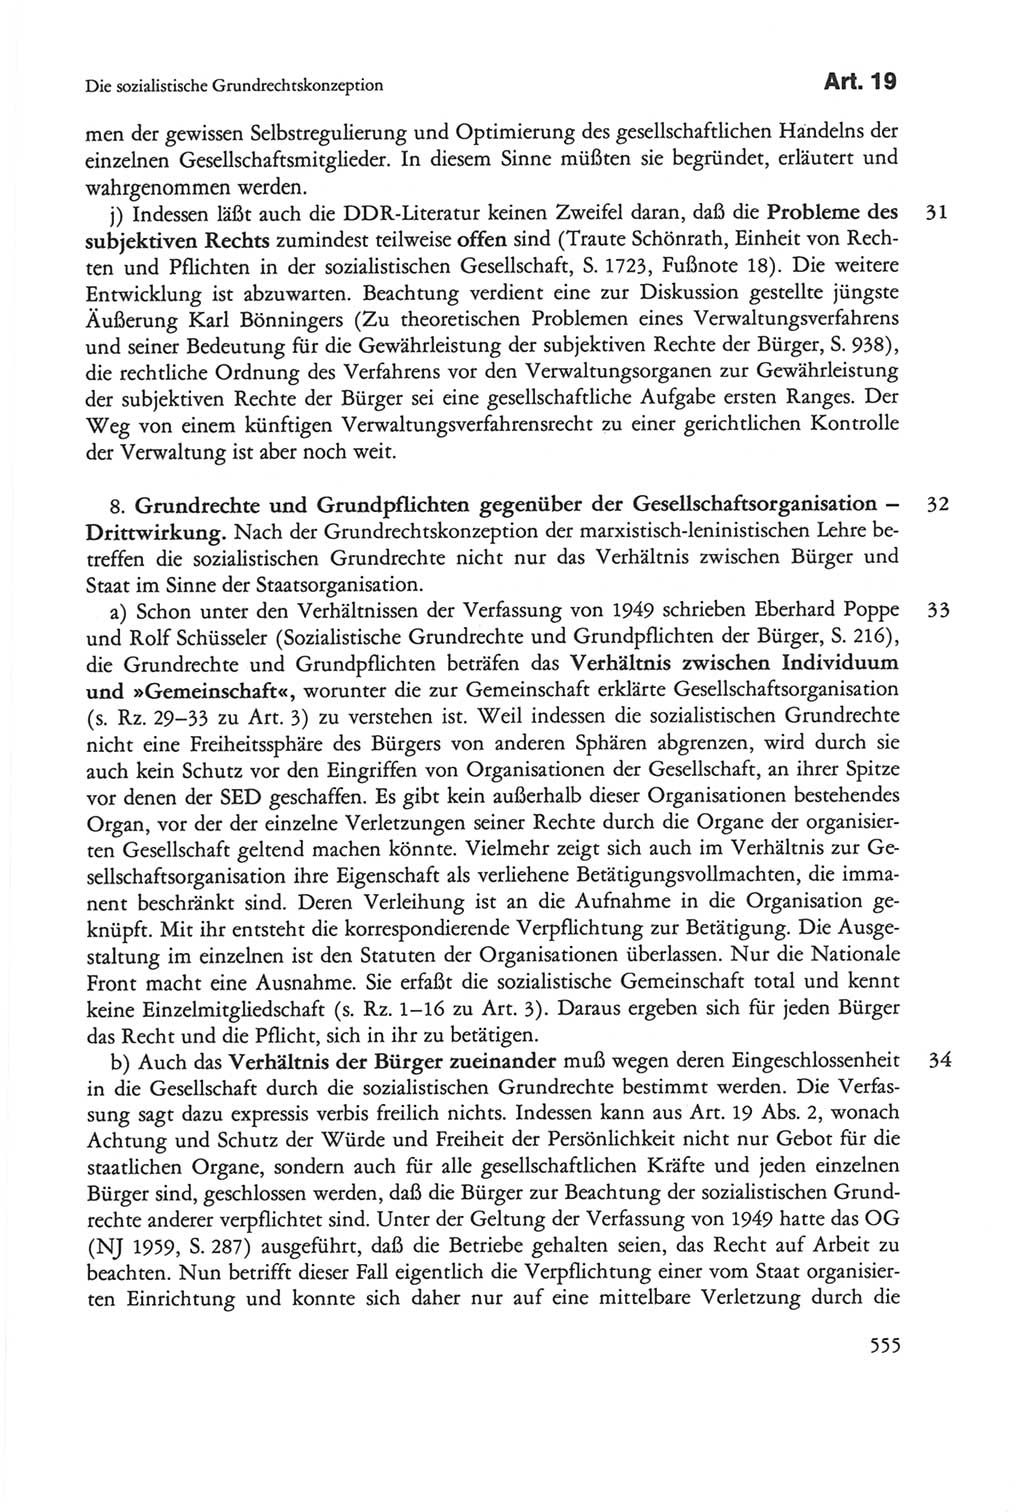 Die sozialistische Verfassung der Deutschen Demokratischen Republik (DDR), Kommentar 1982, Seite 555 (Soz. Verf. DDR Komm. 1982, S. 555)